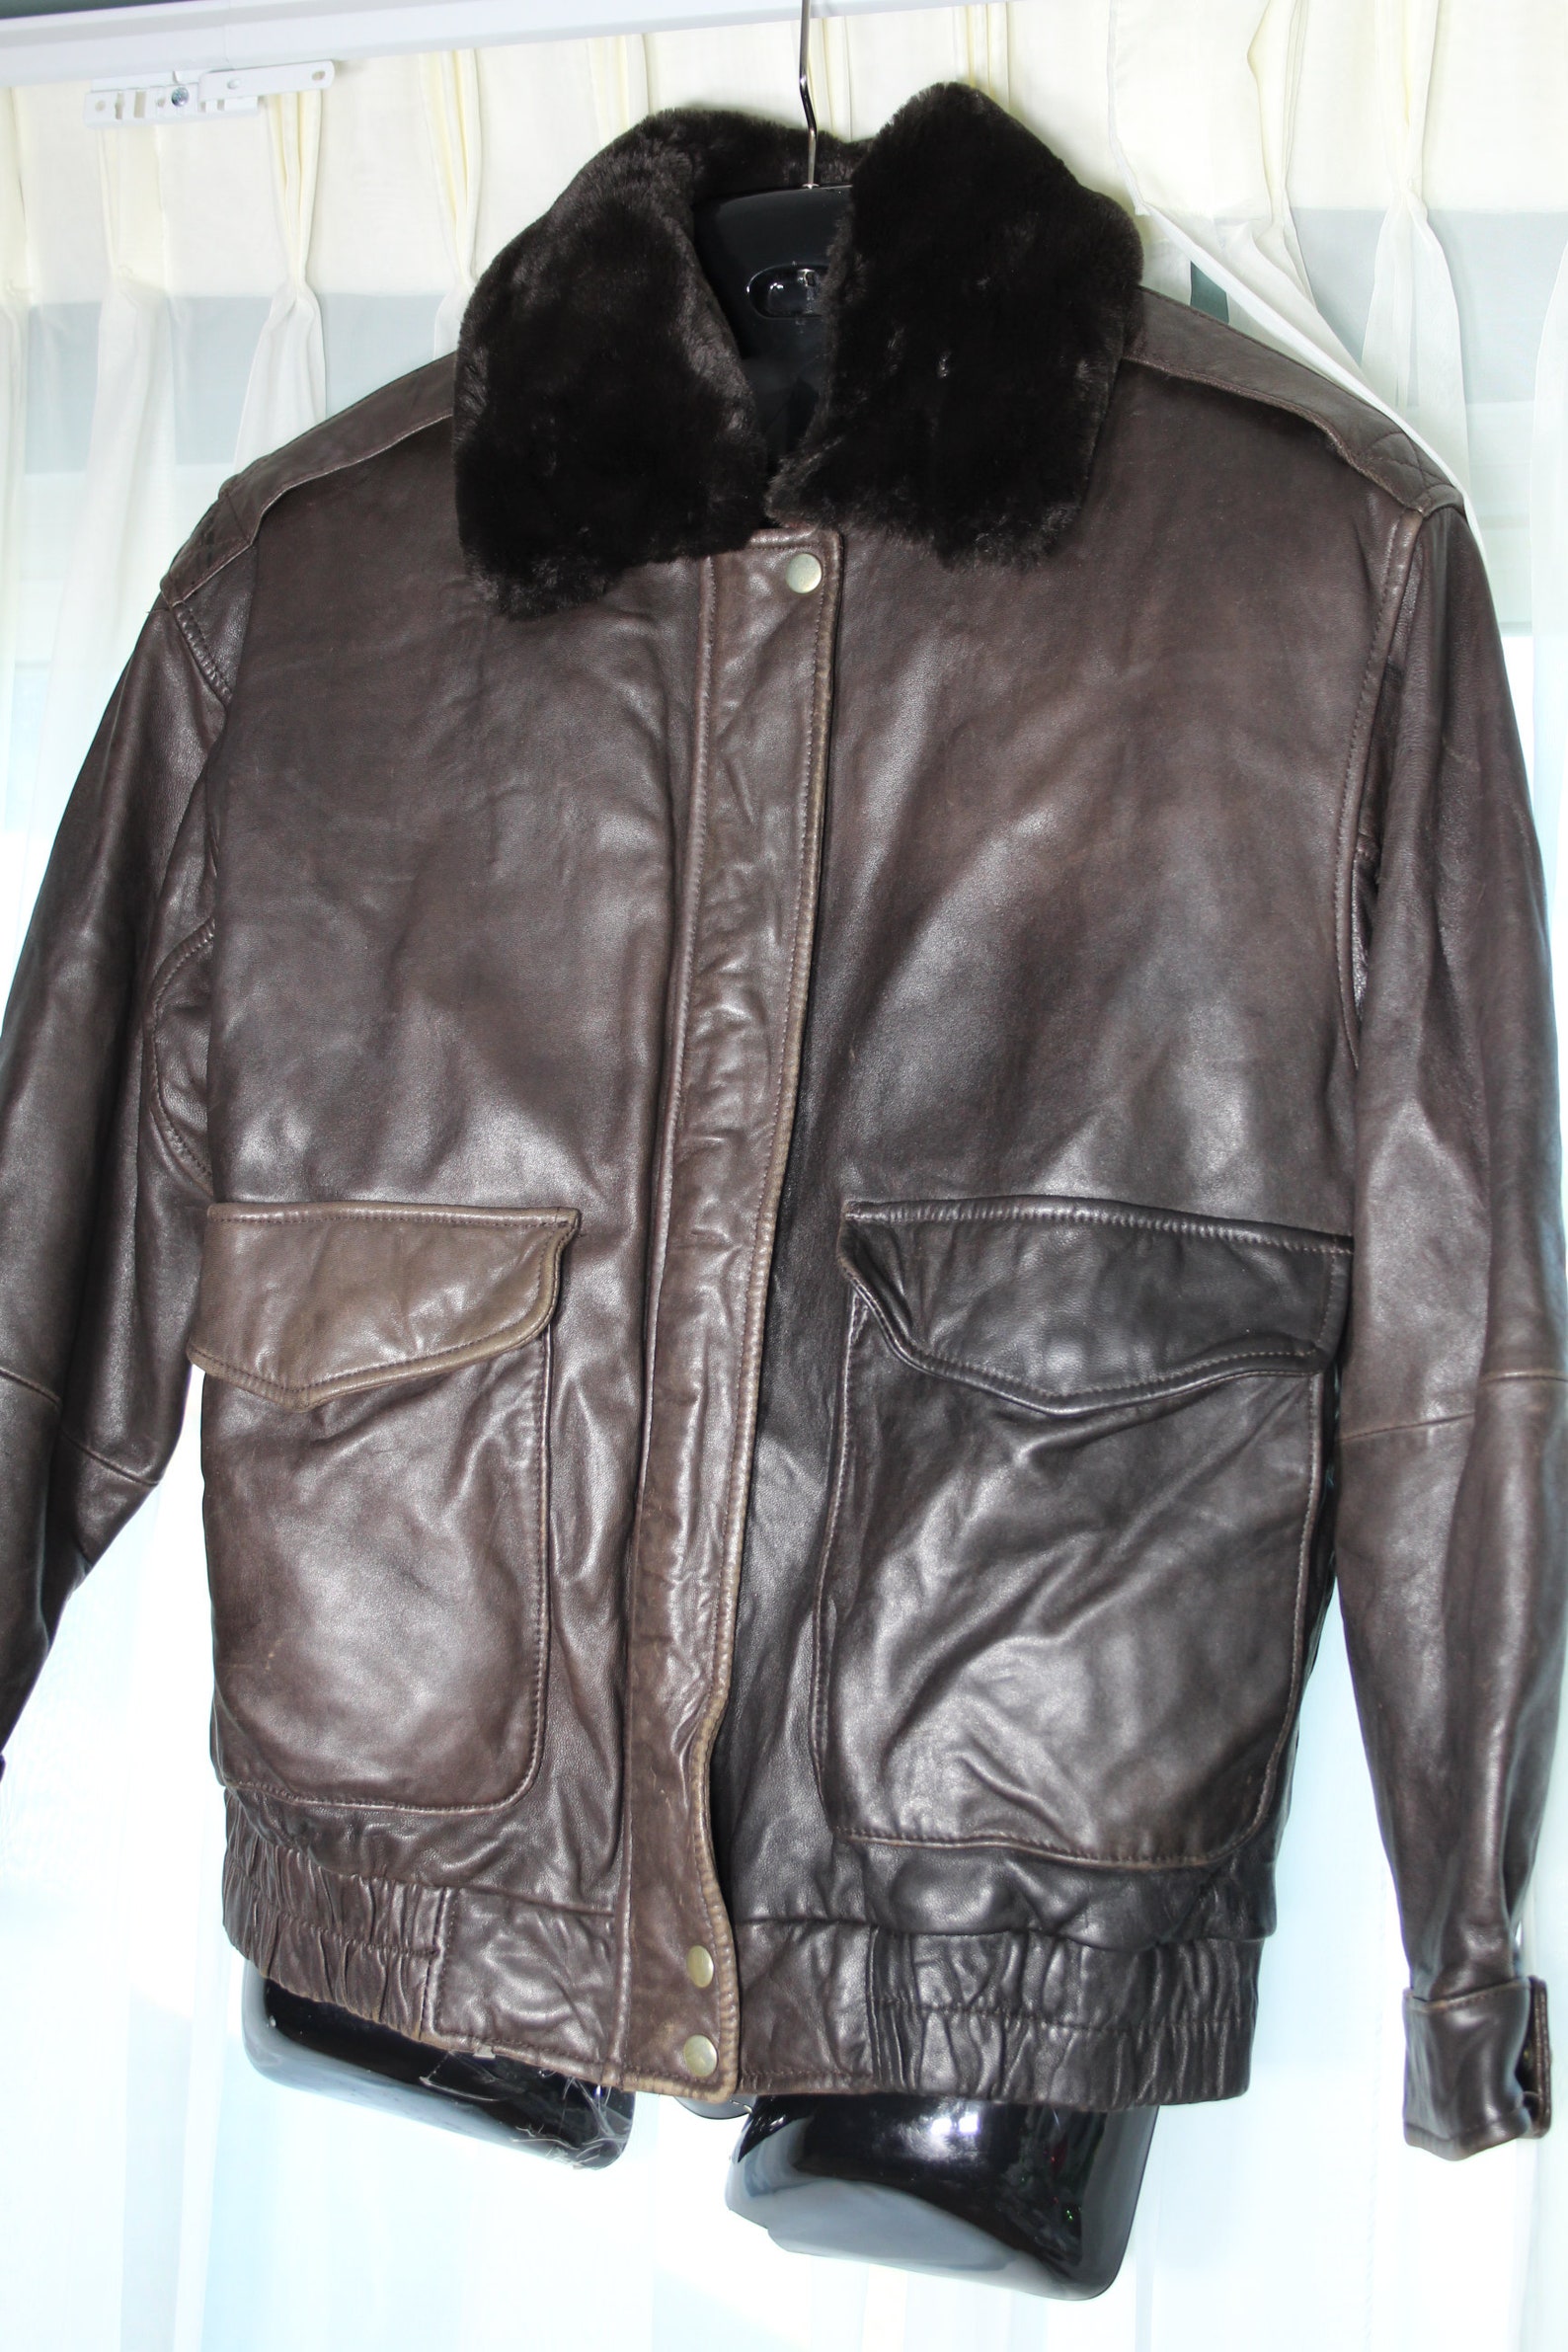 BRAEFAIR Vintage BOMBER LEATHER Brown Jacket Coat M/L Soft - Etsy UK